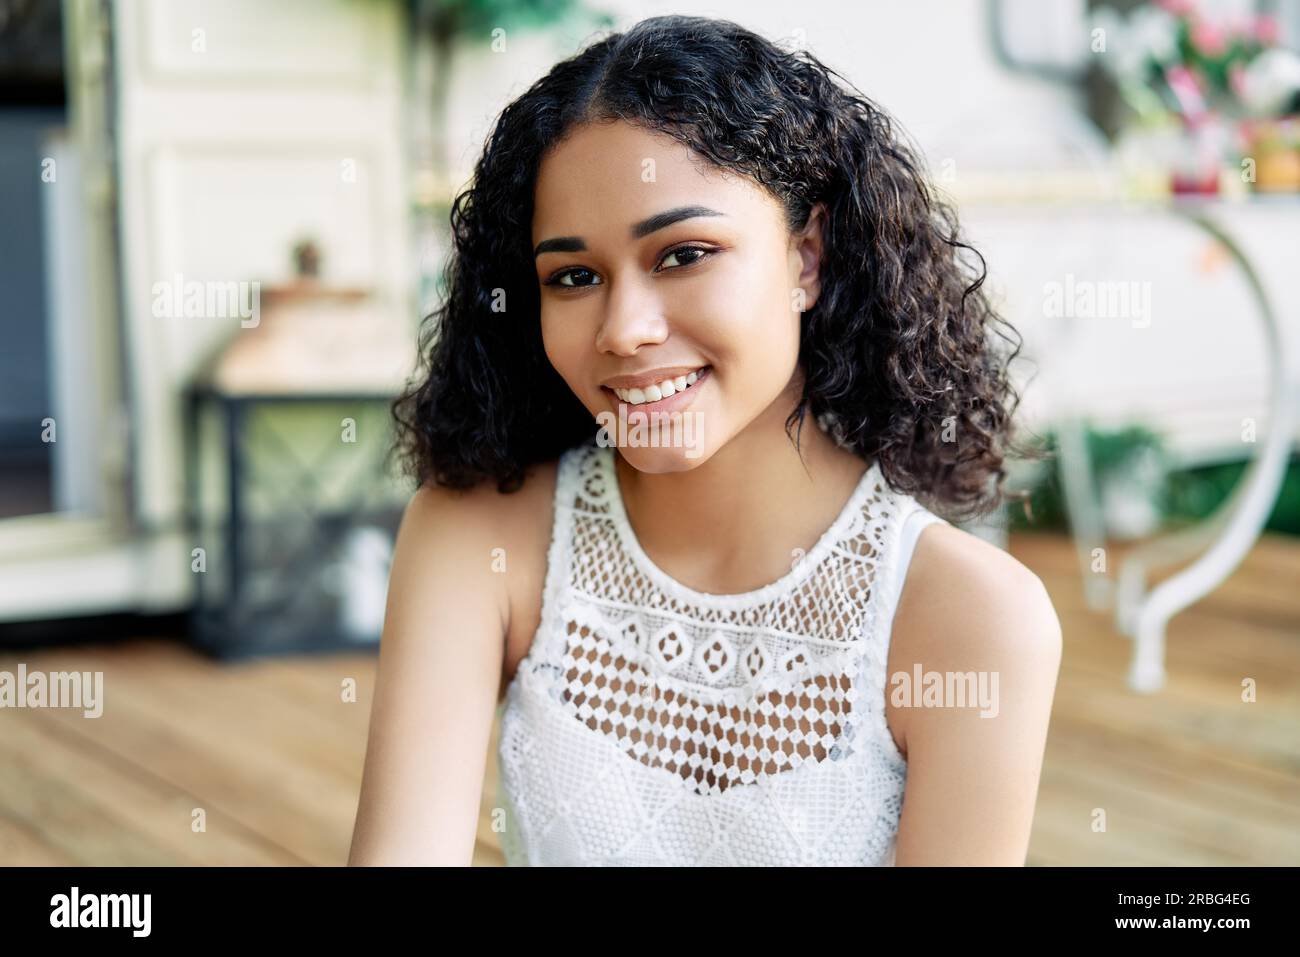 Porträt der jungen schönen afrikanischen amerikanischen weiblichen Modell Lächeln im Freien. Frau Schönheit Konzept Stockfoto